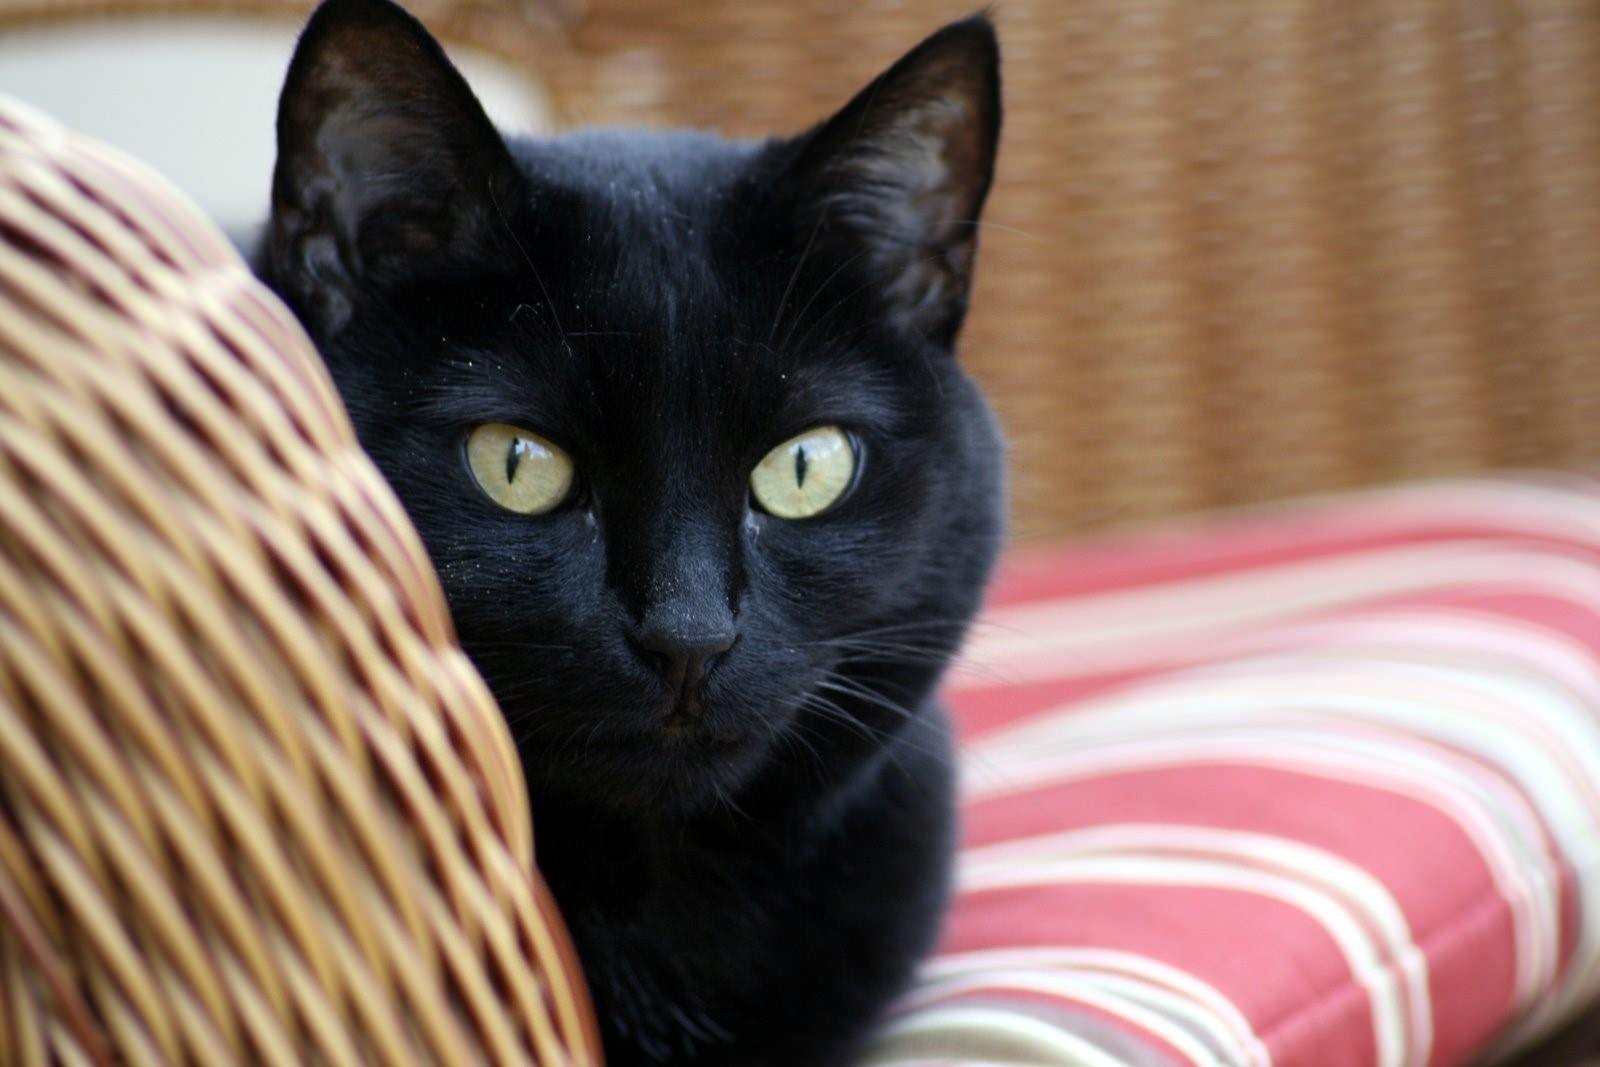 Порода черной кошки с желтыми глазами. Бомбейская кошка черная с желтыми глазами. Черный гладкошерстный кот. Черная Бомбейская кошка с зелеными глазами. Черная гладкошерстная кошка с желтыми глазами.